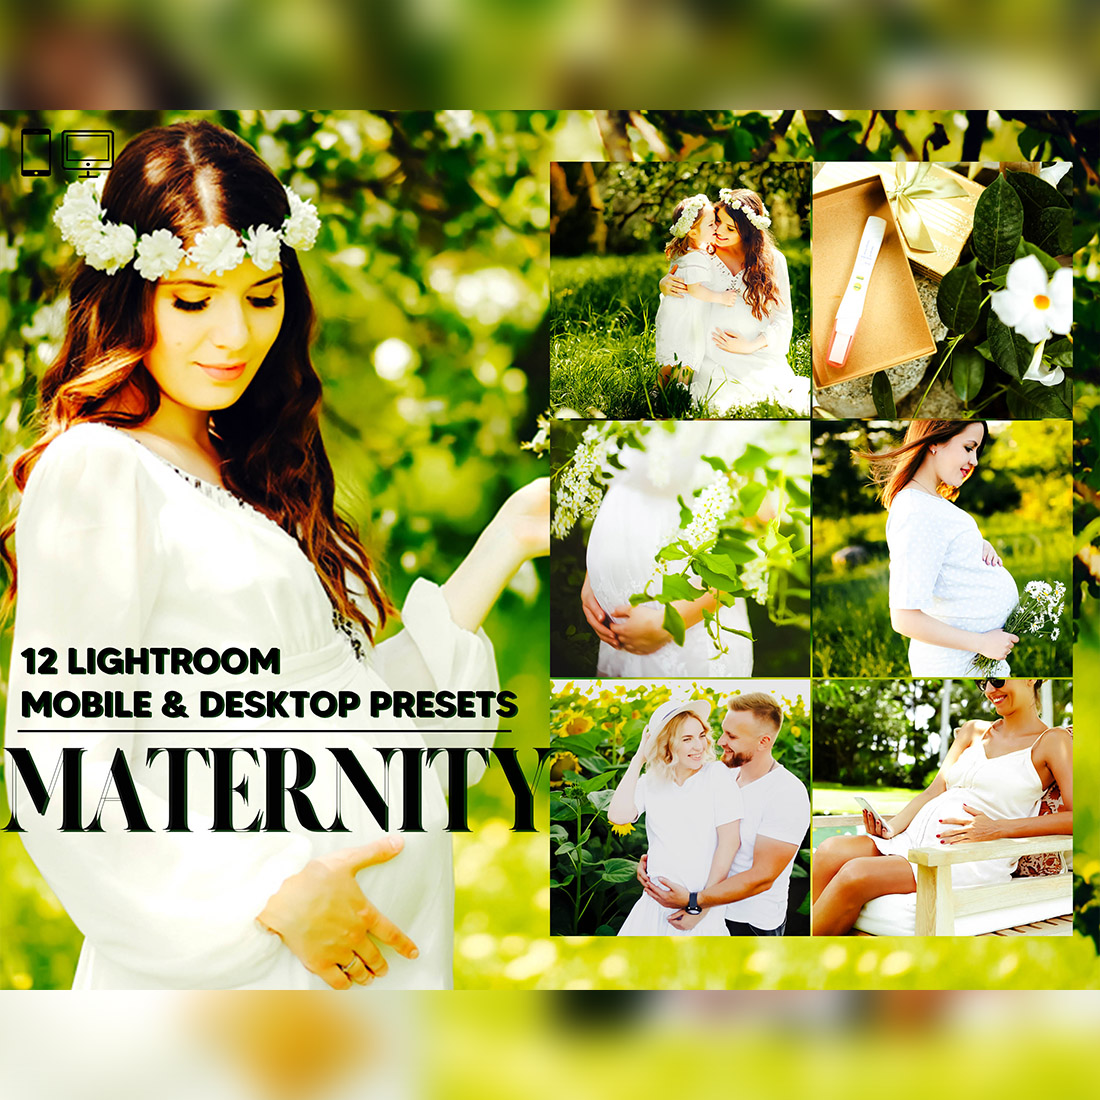 12 Maternity Lightroom Presets, Pregnancy Mobile Preset, Summer Desktop LR Filter DNG Instagram Lifestyle Theme For Portrait , Spring Scheme cover image.